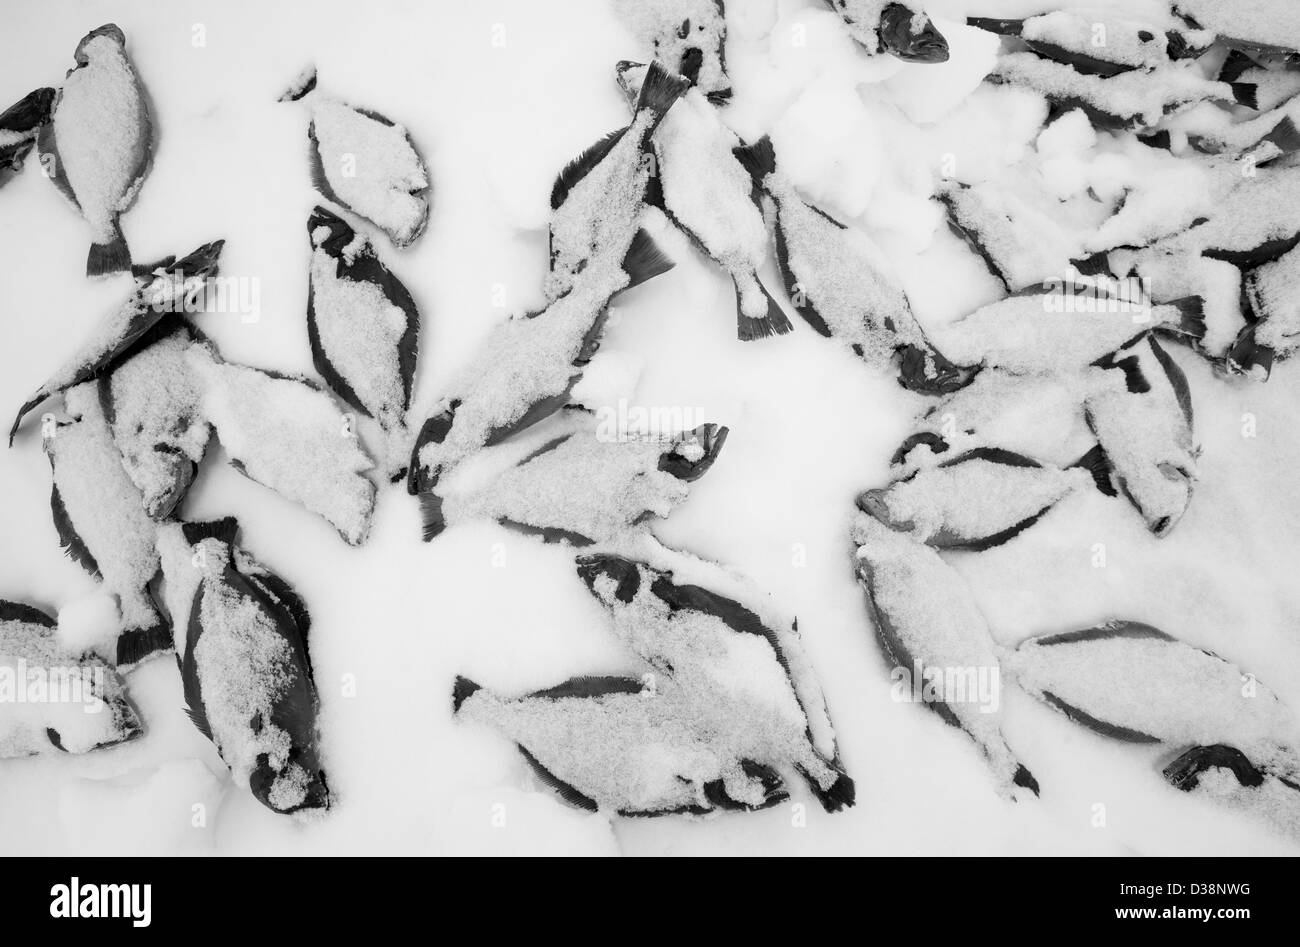 Les poissons fraîchement pêchés dans la neige Banque D'Images